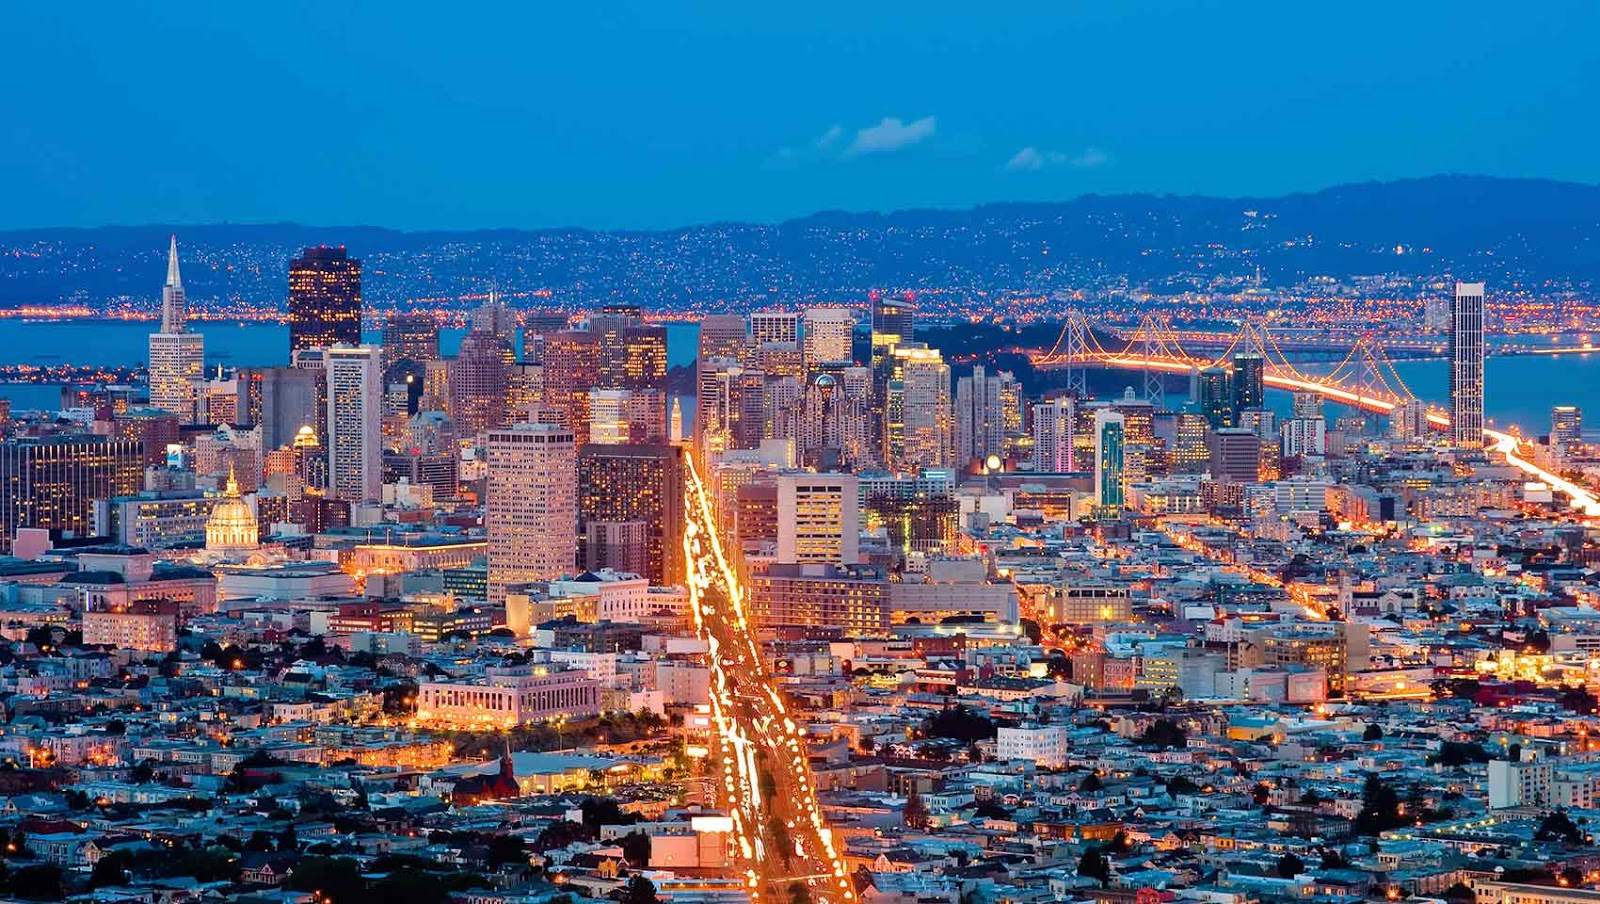 مناخ سان فرانسيسكو وأشهر الأماكن السياحية بها